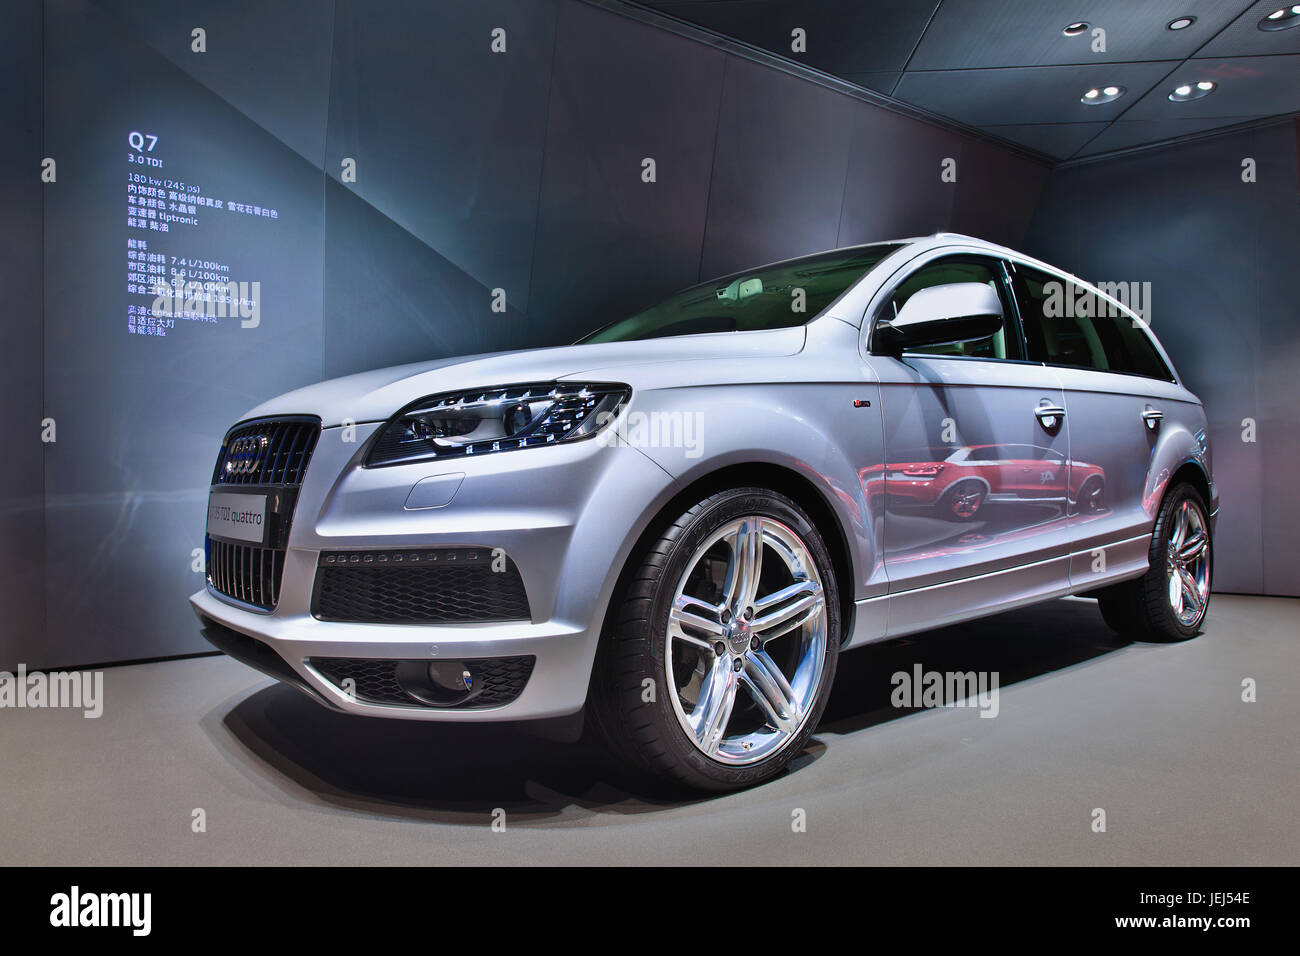 PECHINO-16 APRILE 2013. Audi Q7 in uno showroom. Foto Stock